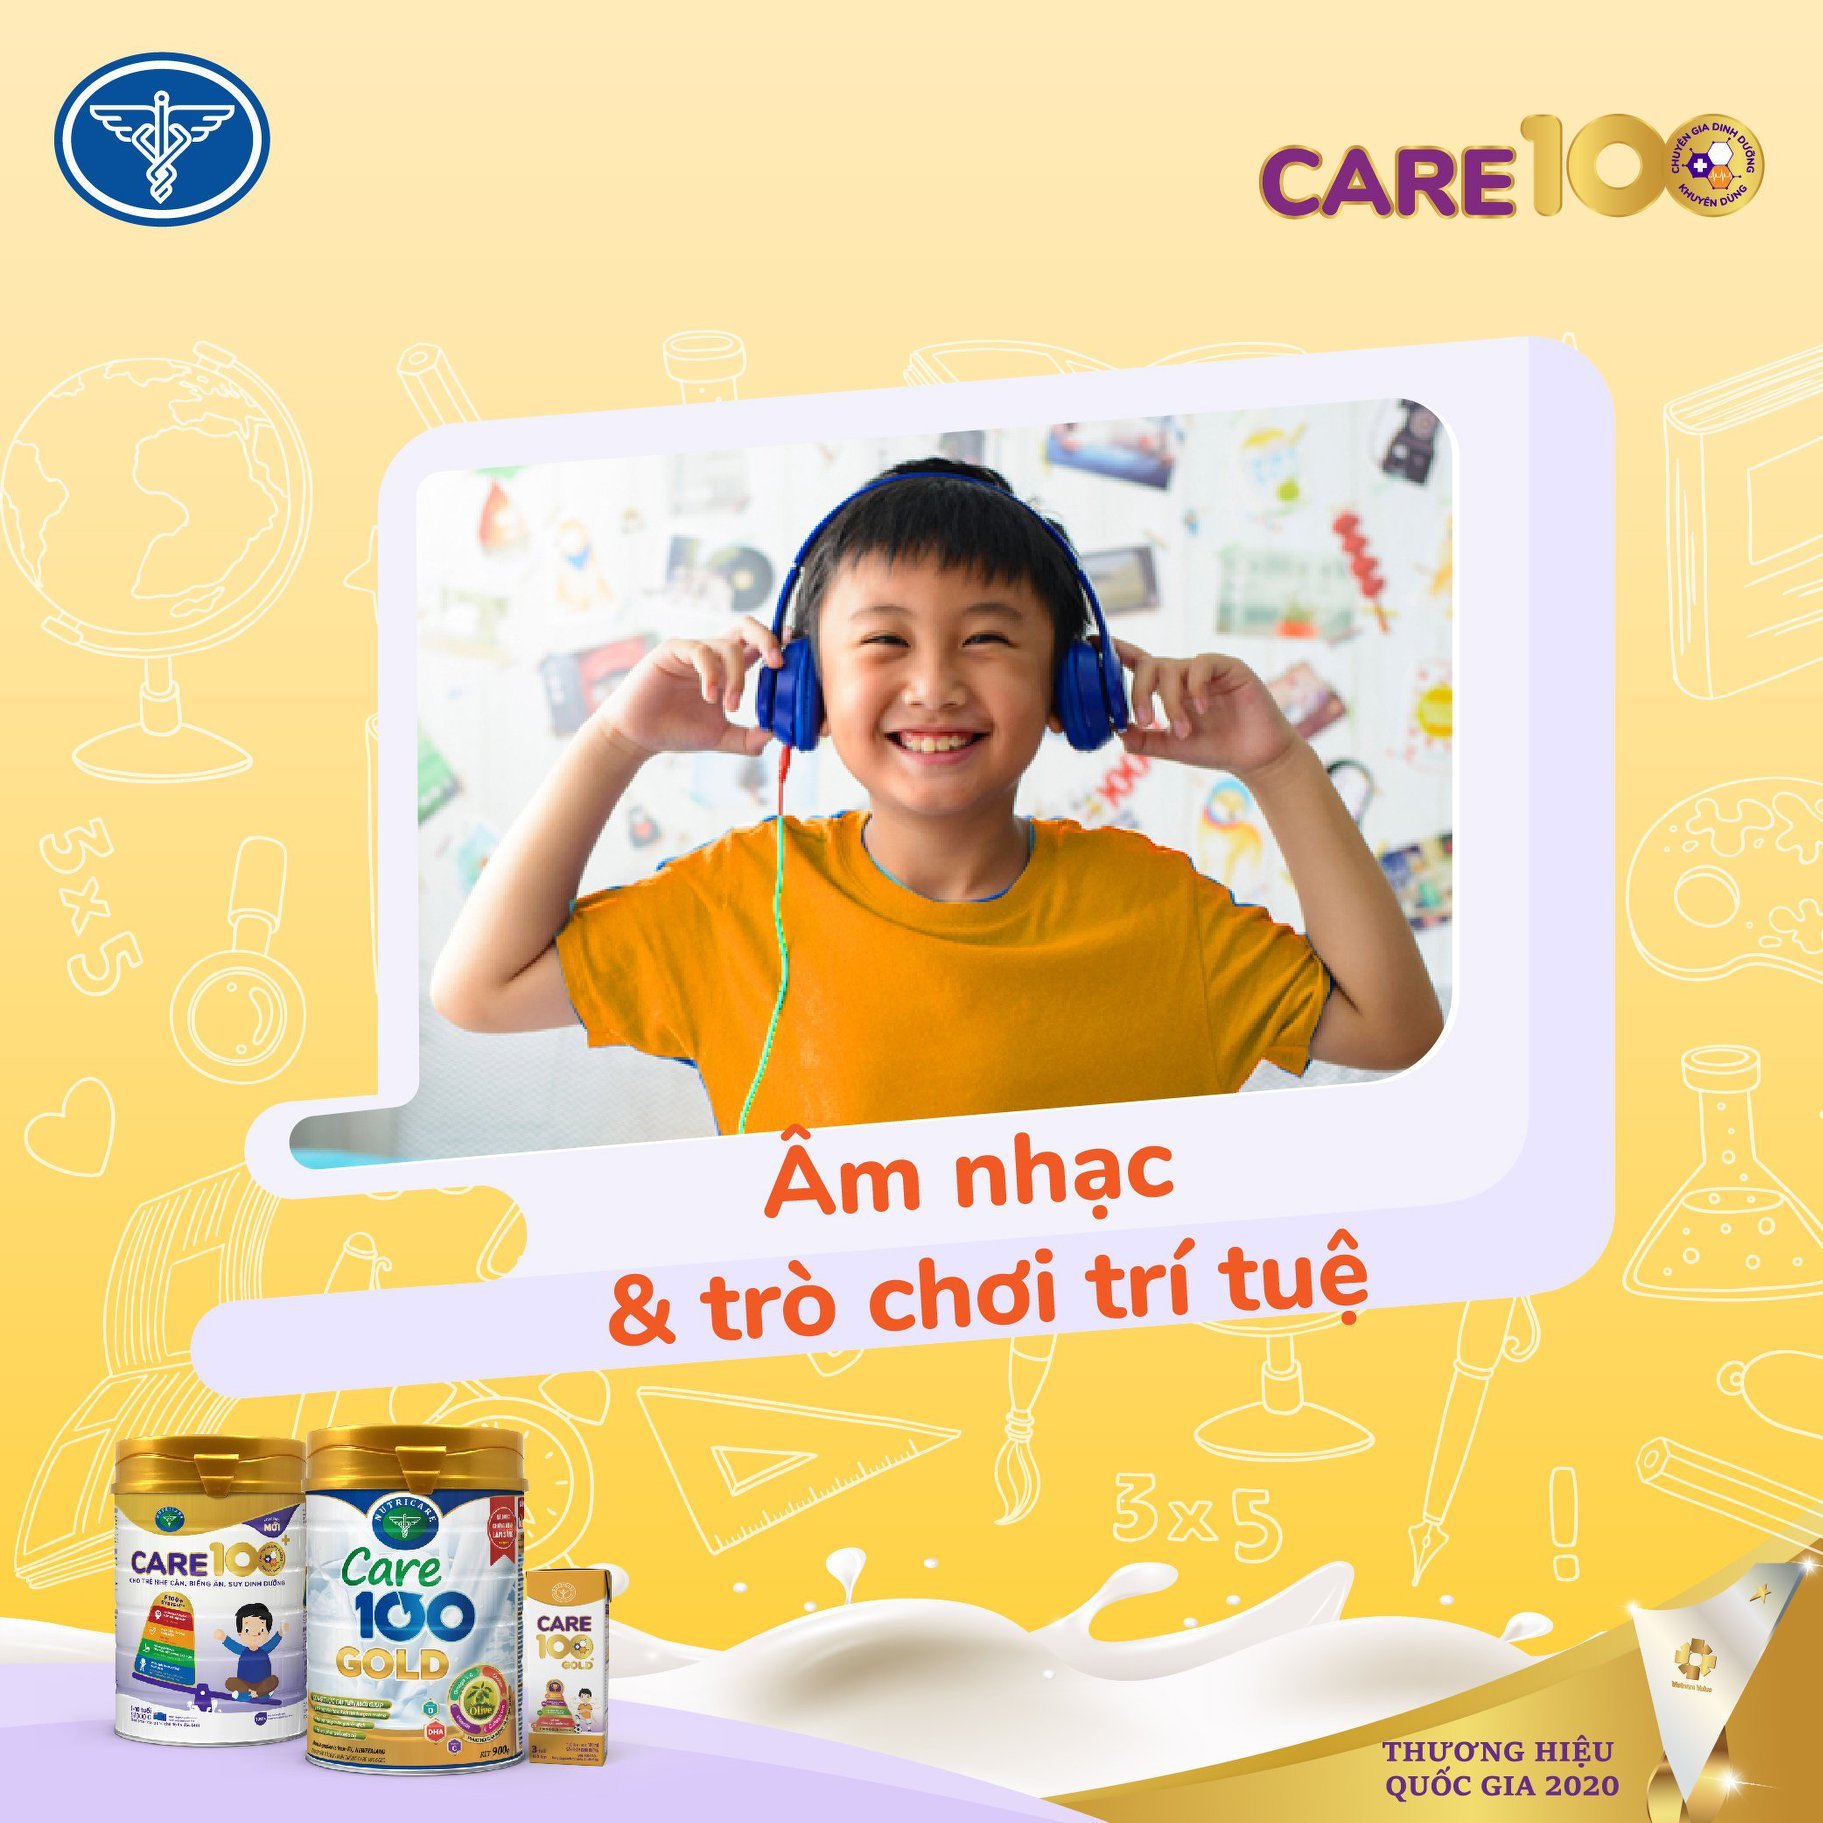 Thùng sữa nước pha sẵn Nutricare Care 100 GOLD cho trẻ thấp còi, biếng ăn từ 1 tuổi (110ml)